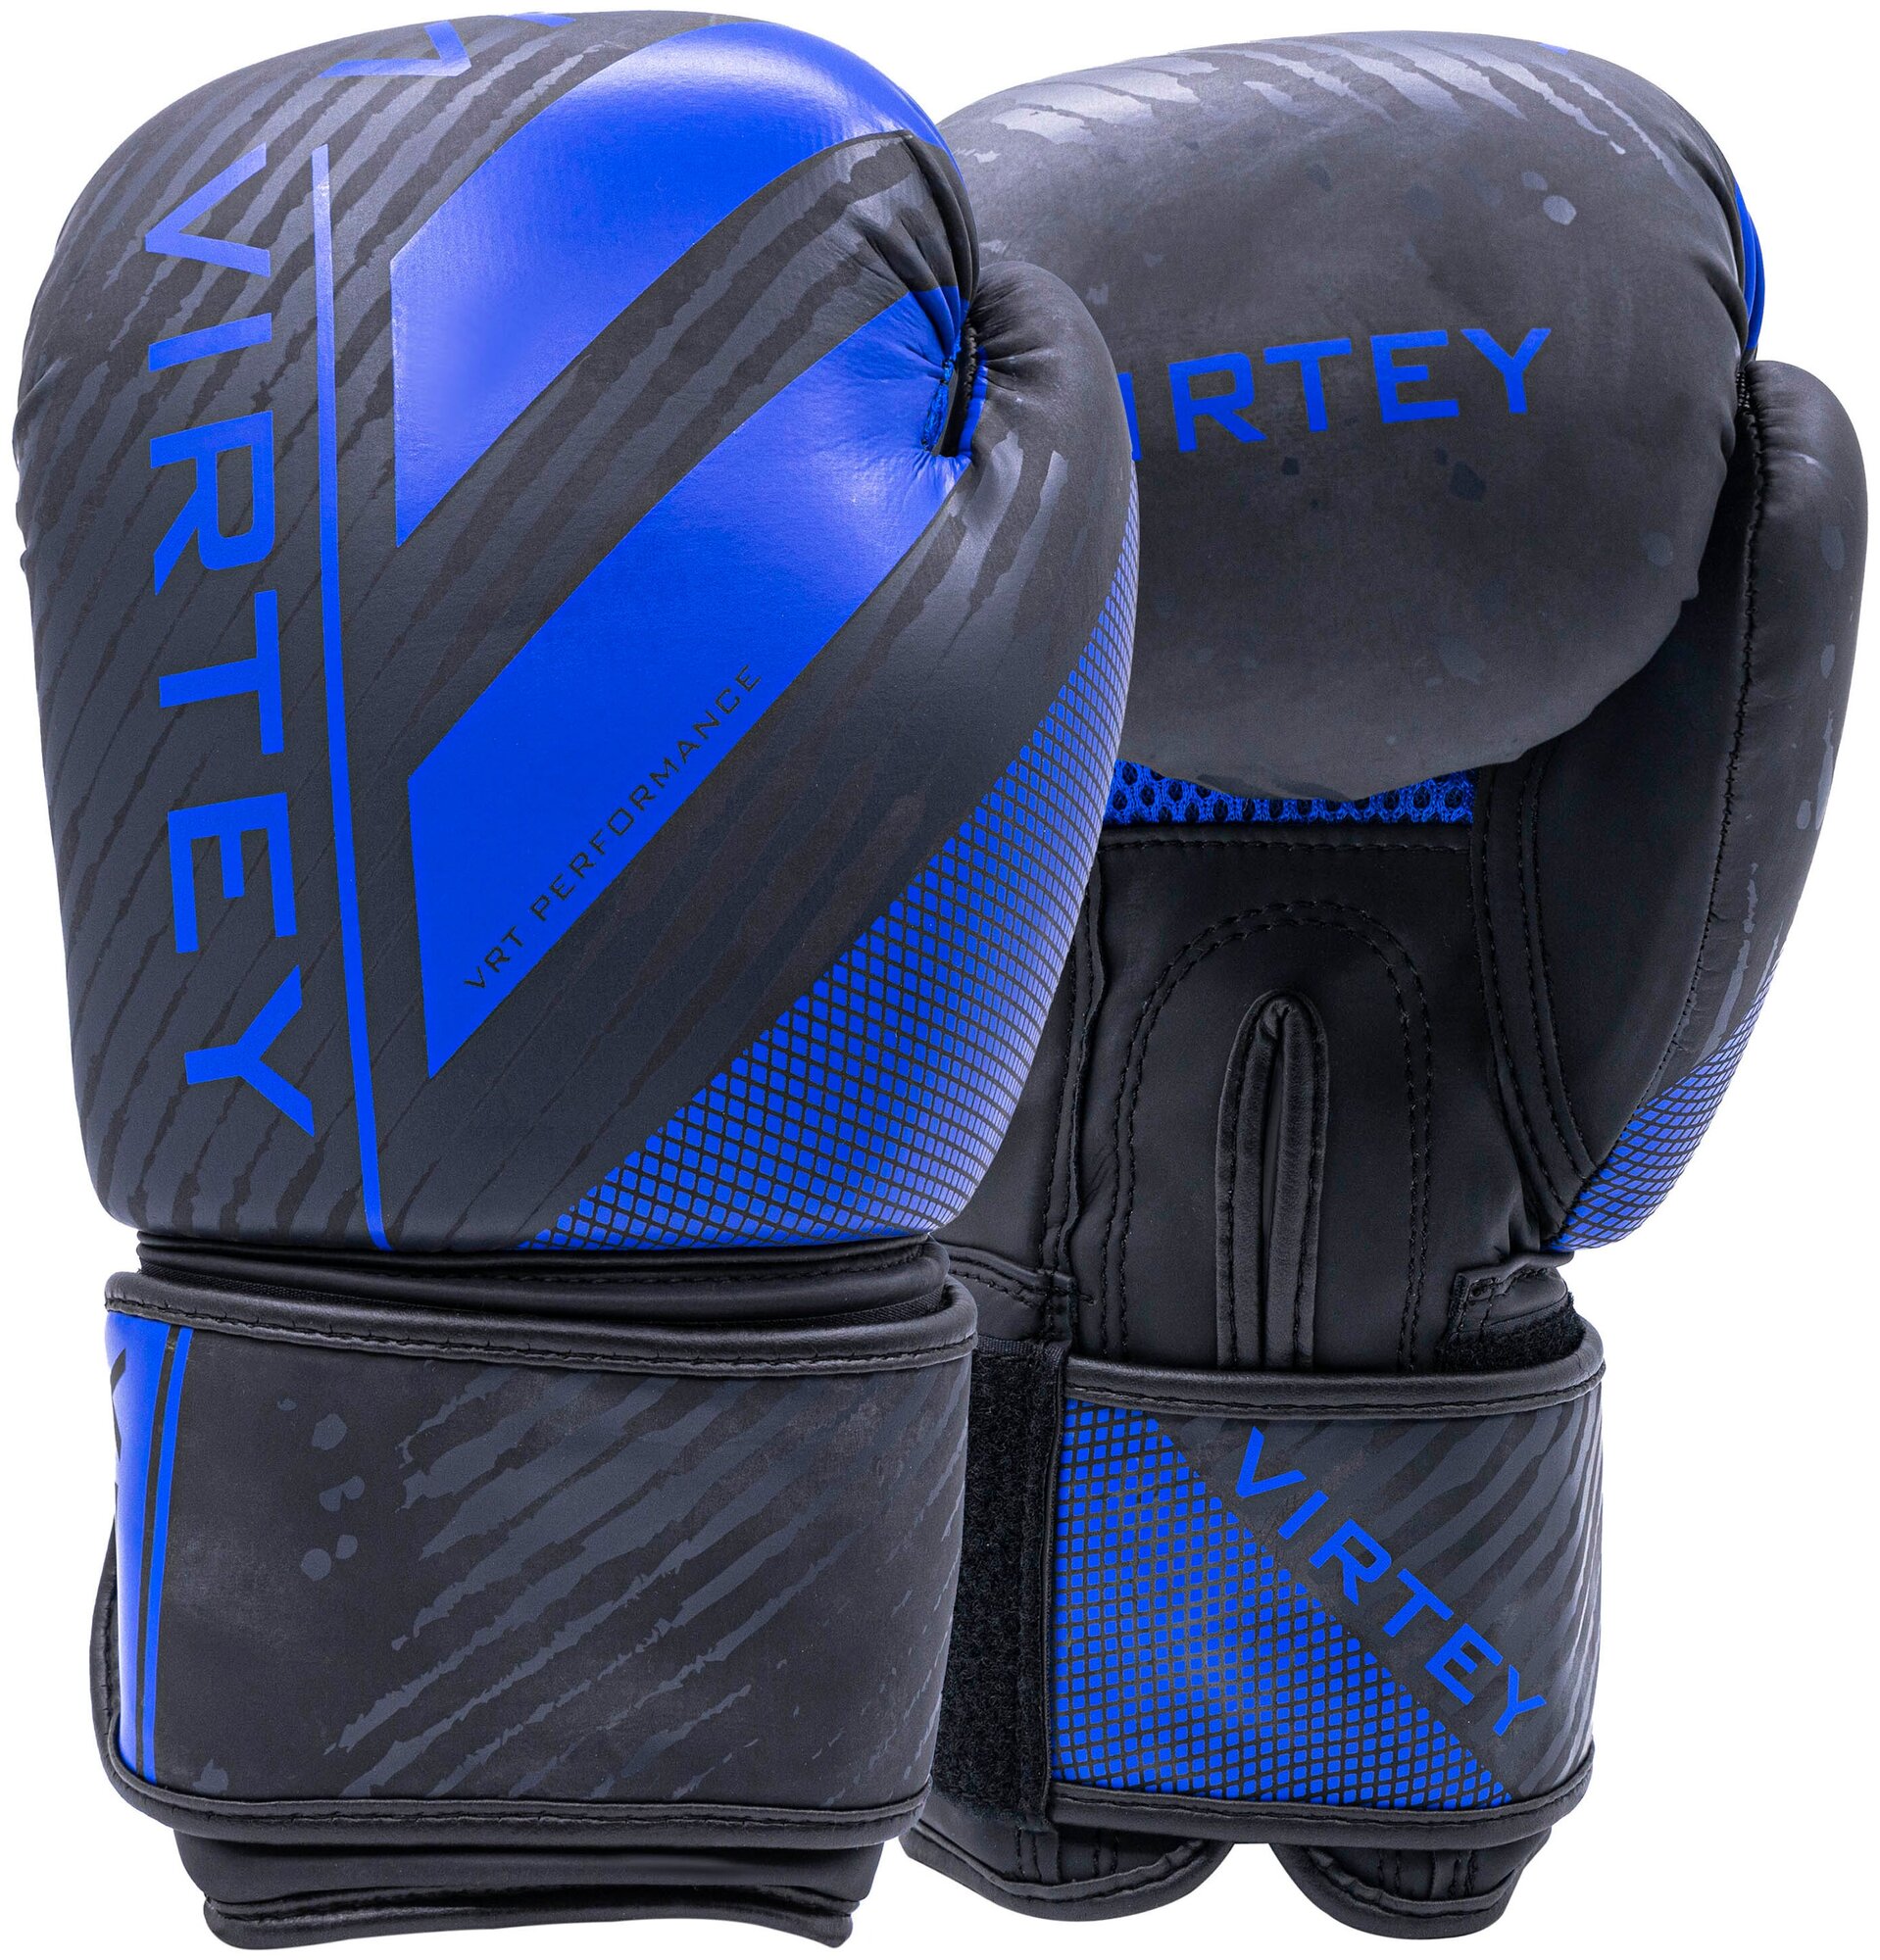 Перчатки боксерские для бокса Virtey BG13